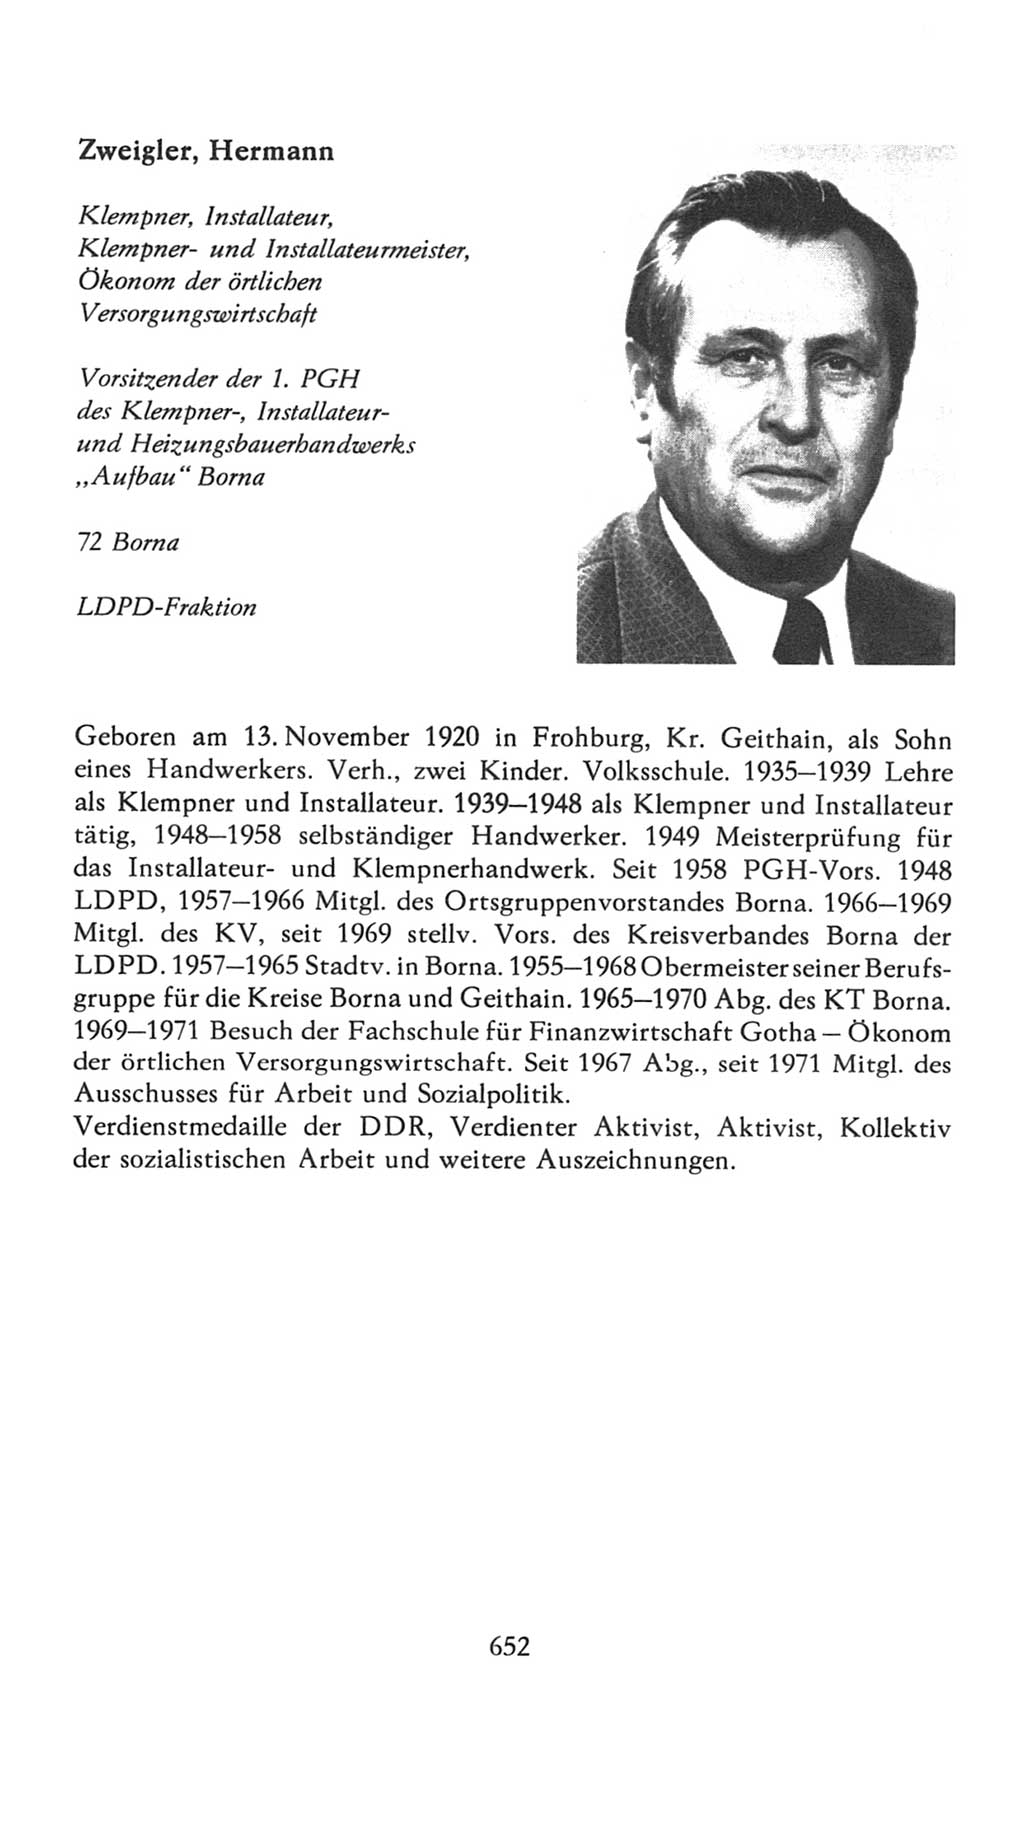 Volkskammer (VK) der Deutschen Demokratischen Republik (DDR), 7. Wahlperiode 1976-1981, Seite 652 (VK. DDR 7. WP. 1976-1981, S. 652)